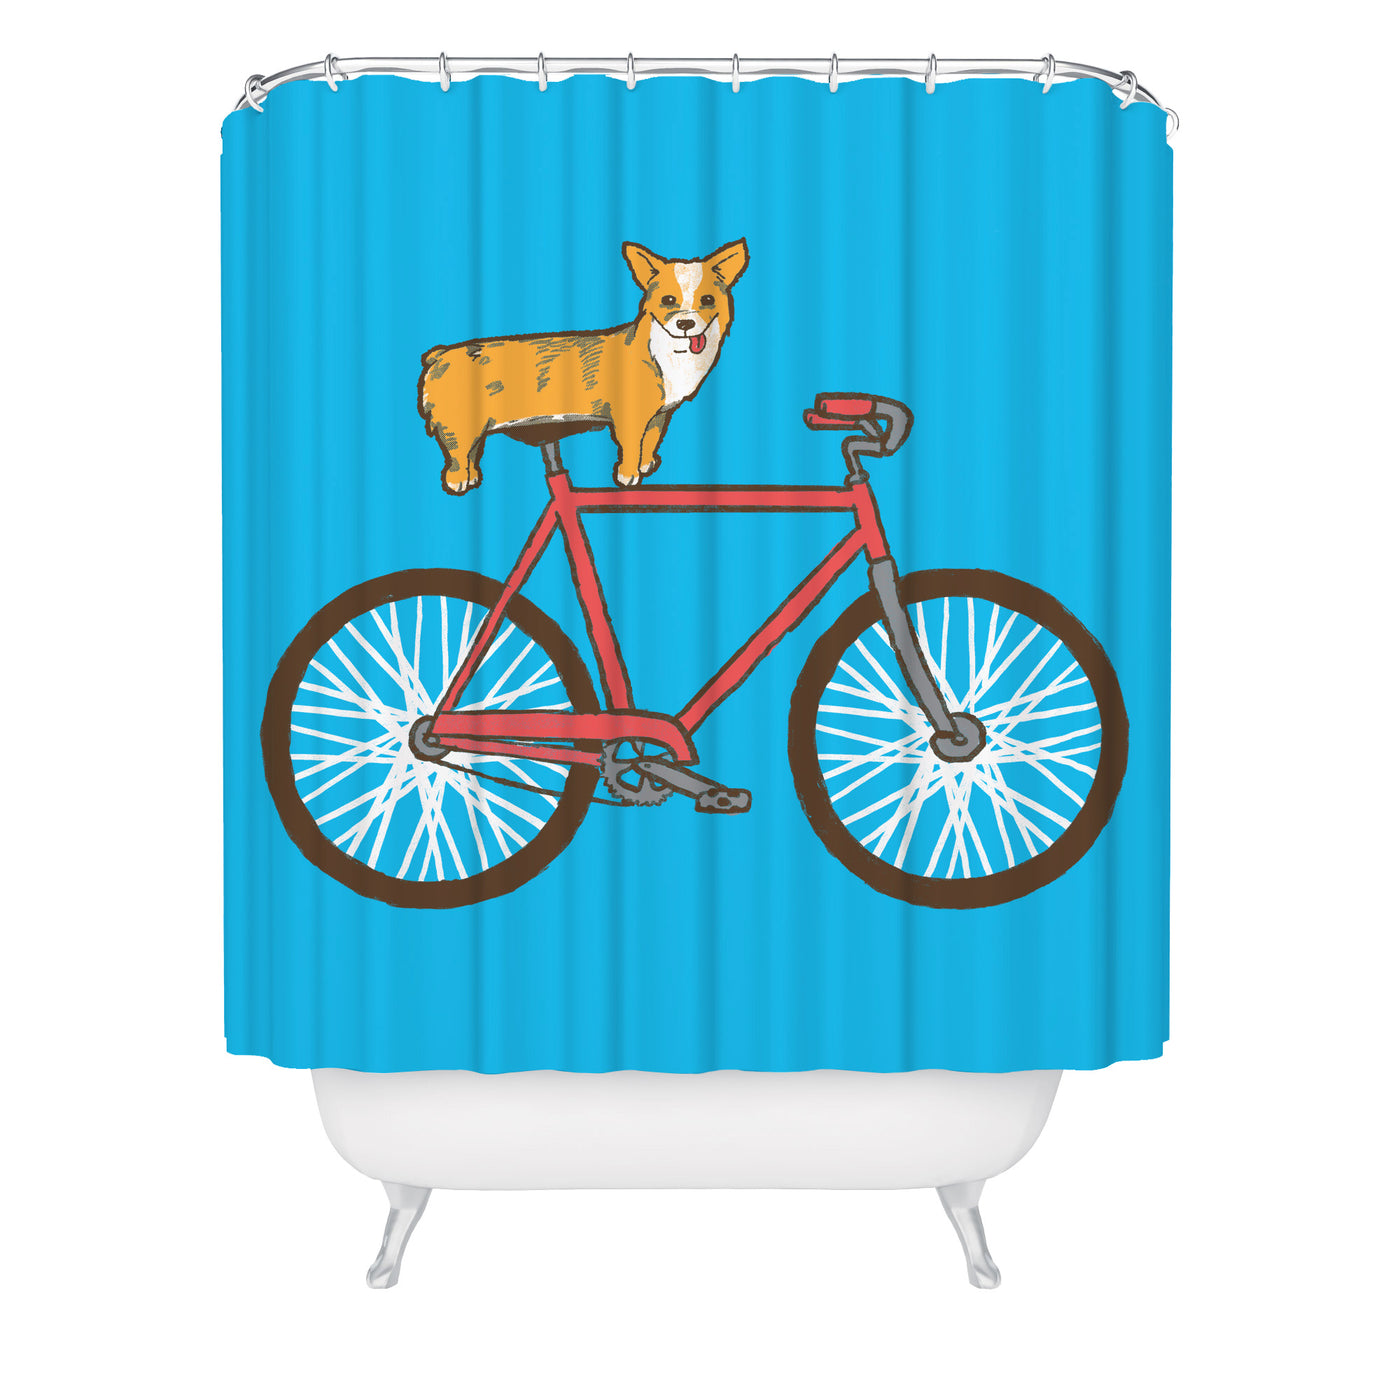 Corgi on a Bike Shower Curtain